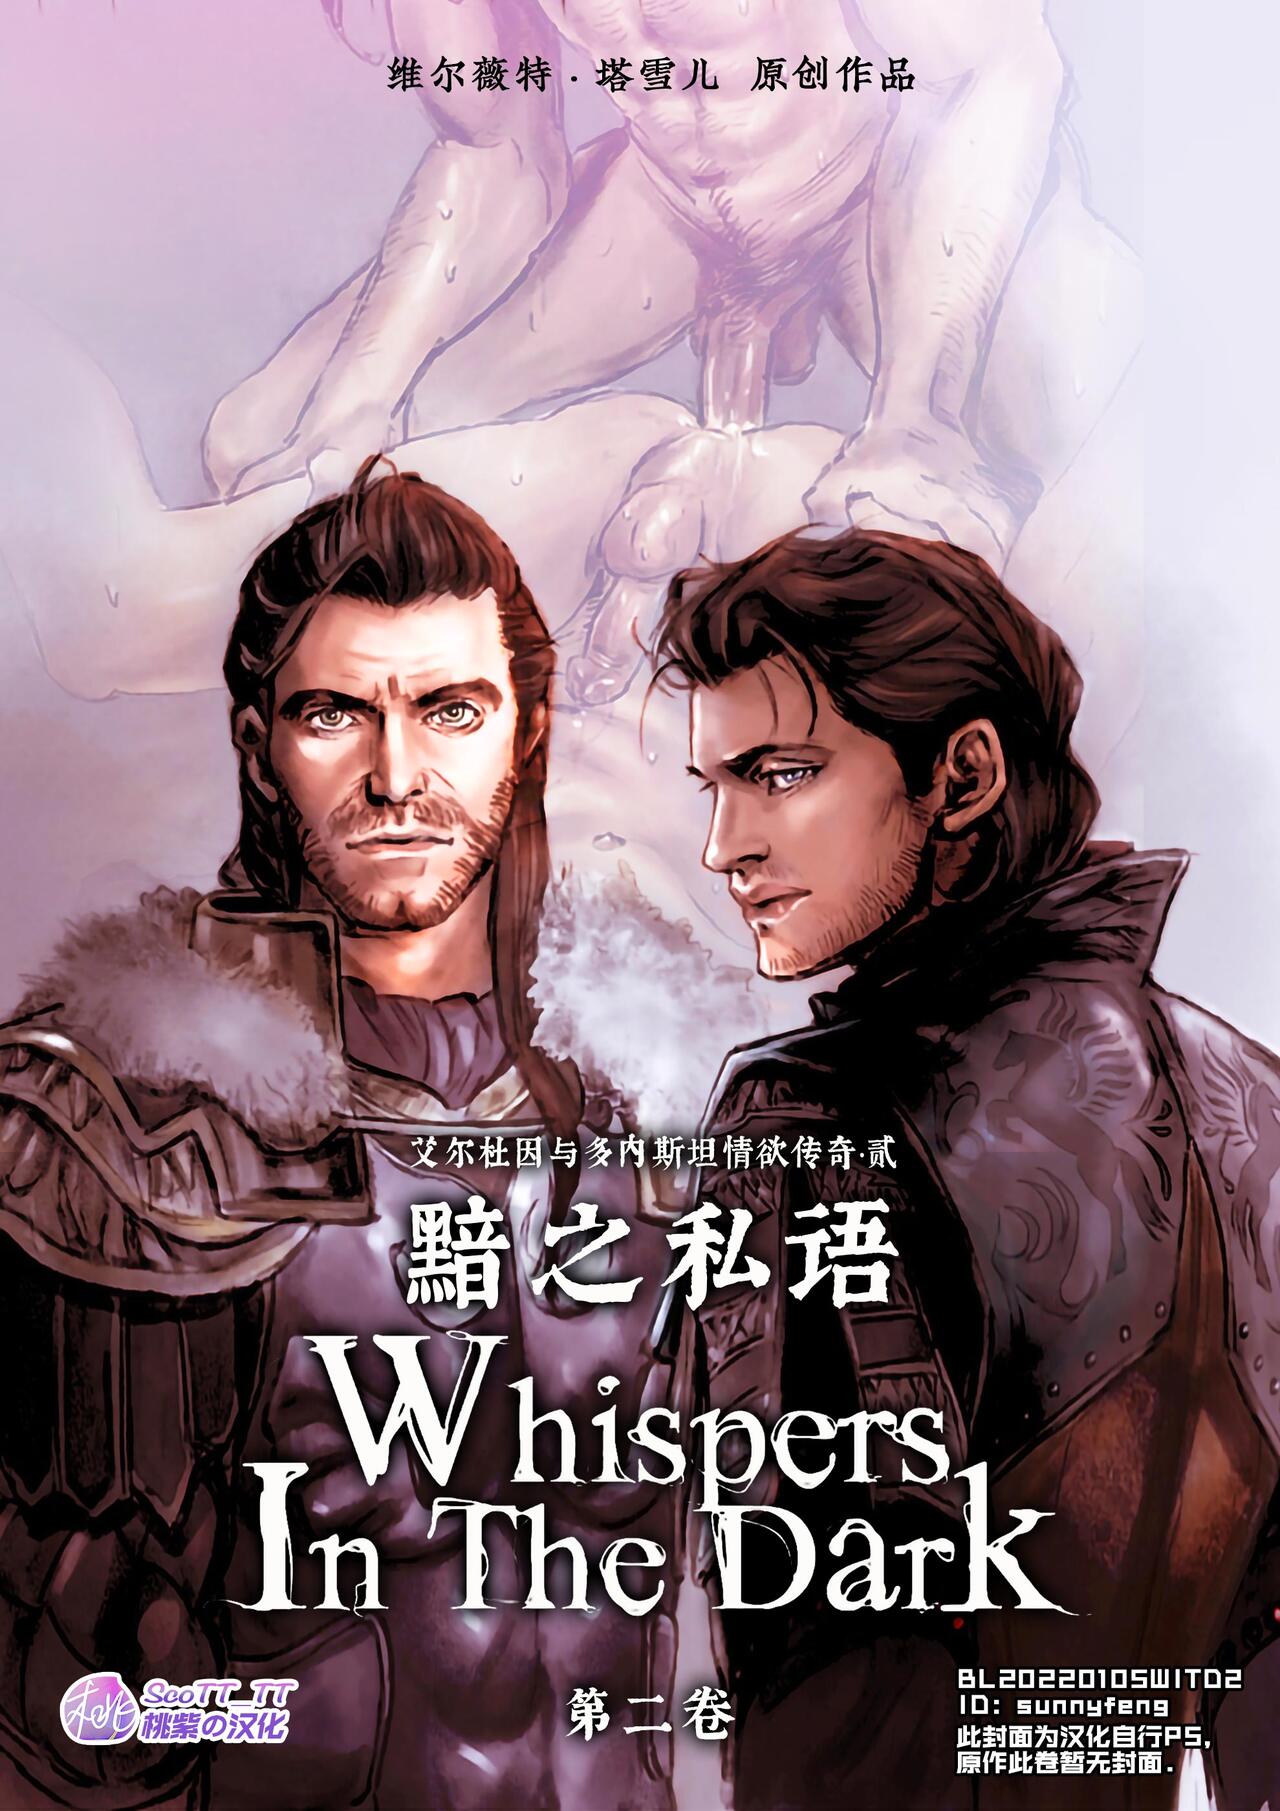 [Velvet Toucher] Whispers In the Dark - Chapter 2 | 黯之私语 [Chinese] [桃紫 ScoTT_TT] 